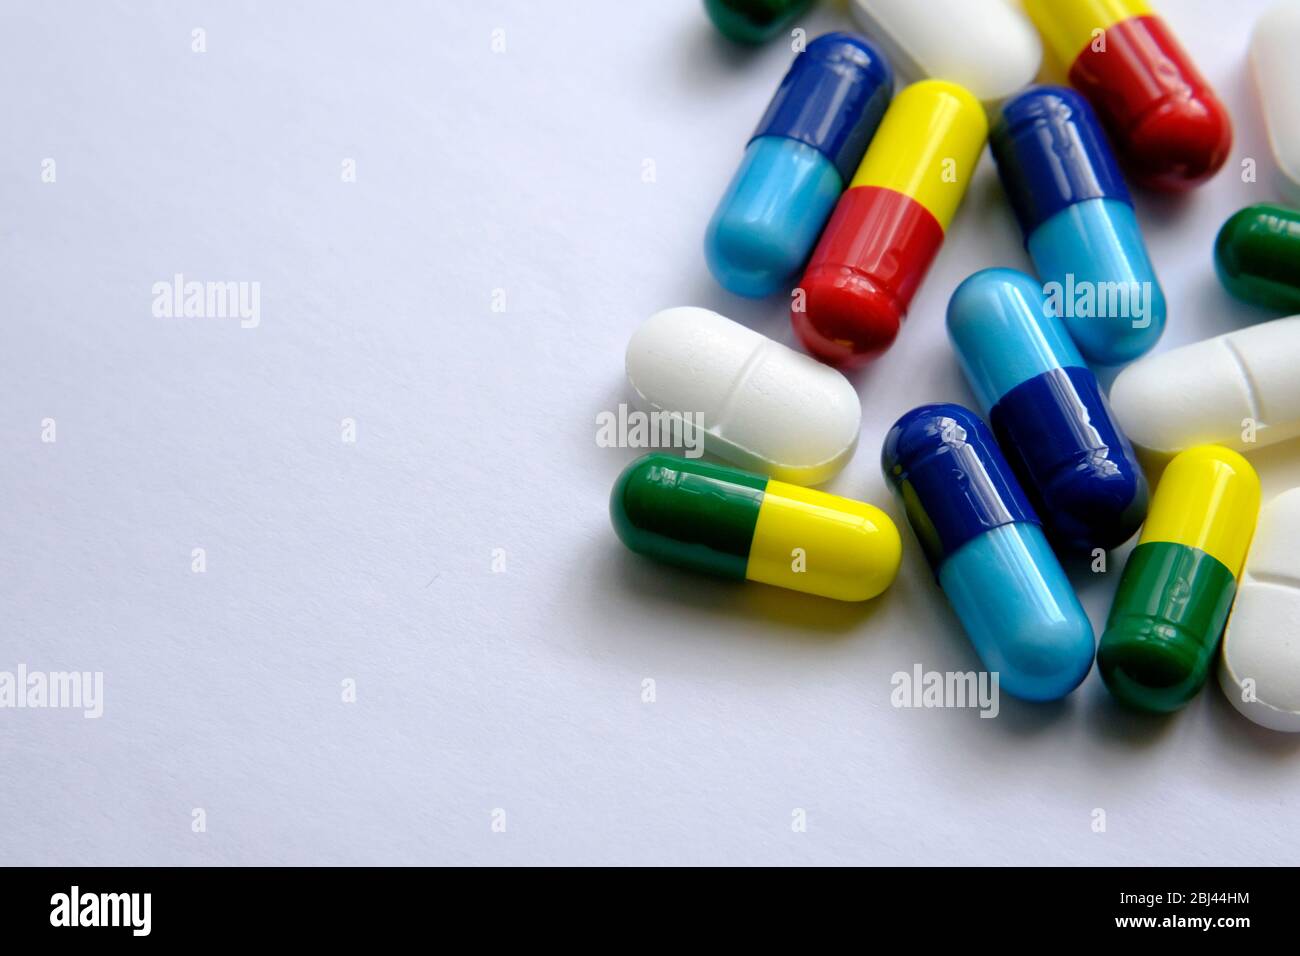 Pile di pillole di diversi colori: Blu, giallo, rosso e bianco) poste sopra la carta bianca. Illustrativa per i soggetti medici, sanitari e di altro tipo. Ma Foto Stock